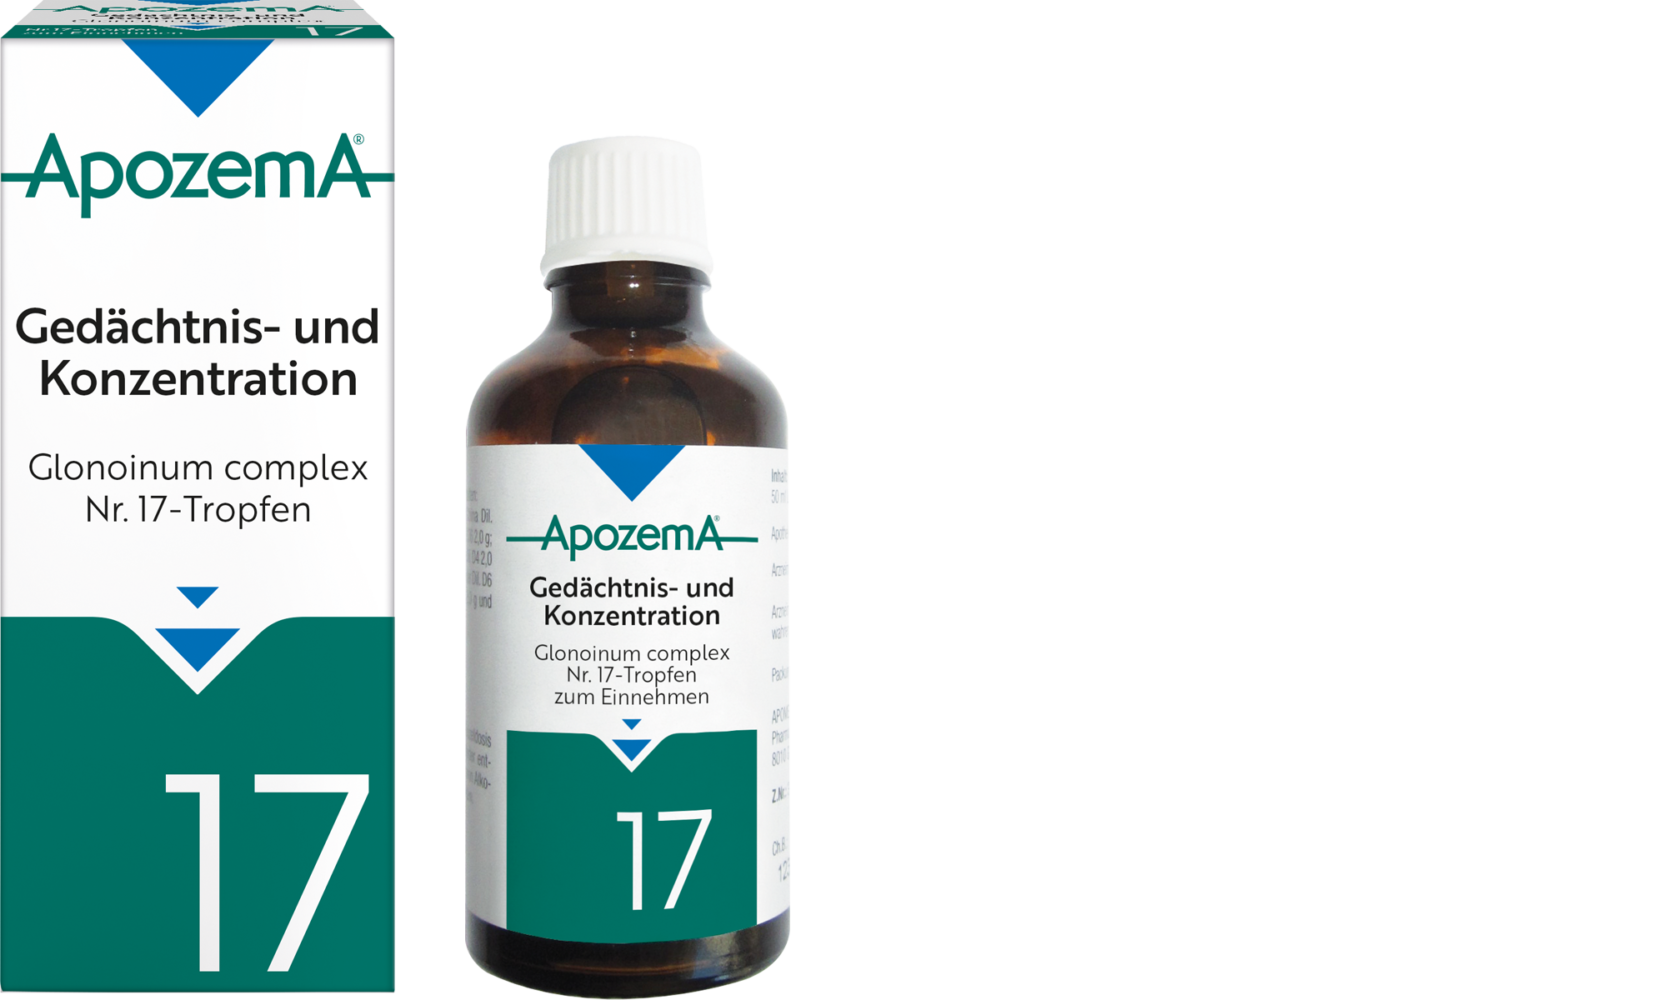 Apozema® Gedächtnis- und Konzentration; Glonoinum complex Nr. 17-Tropfen